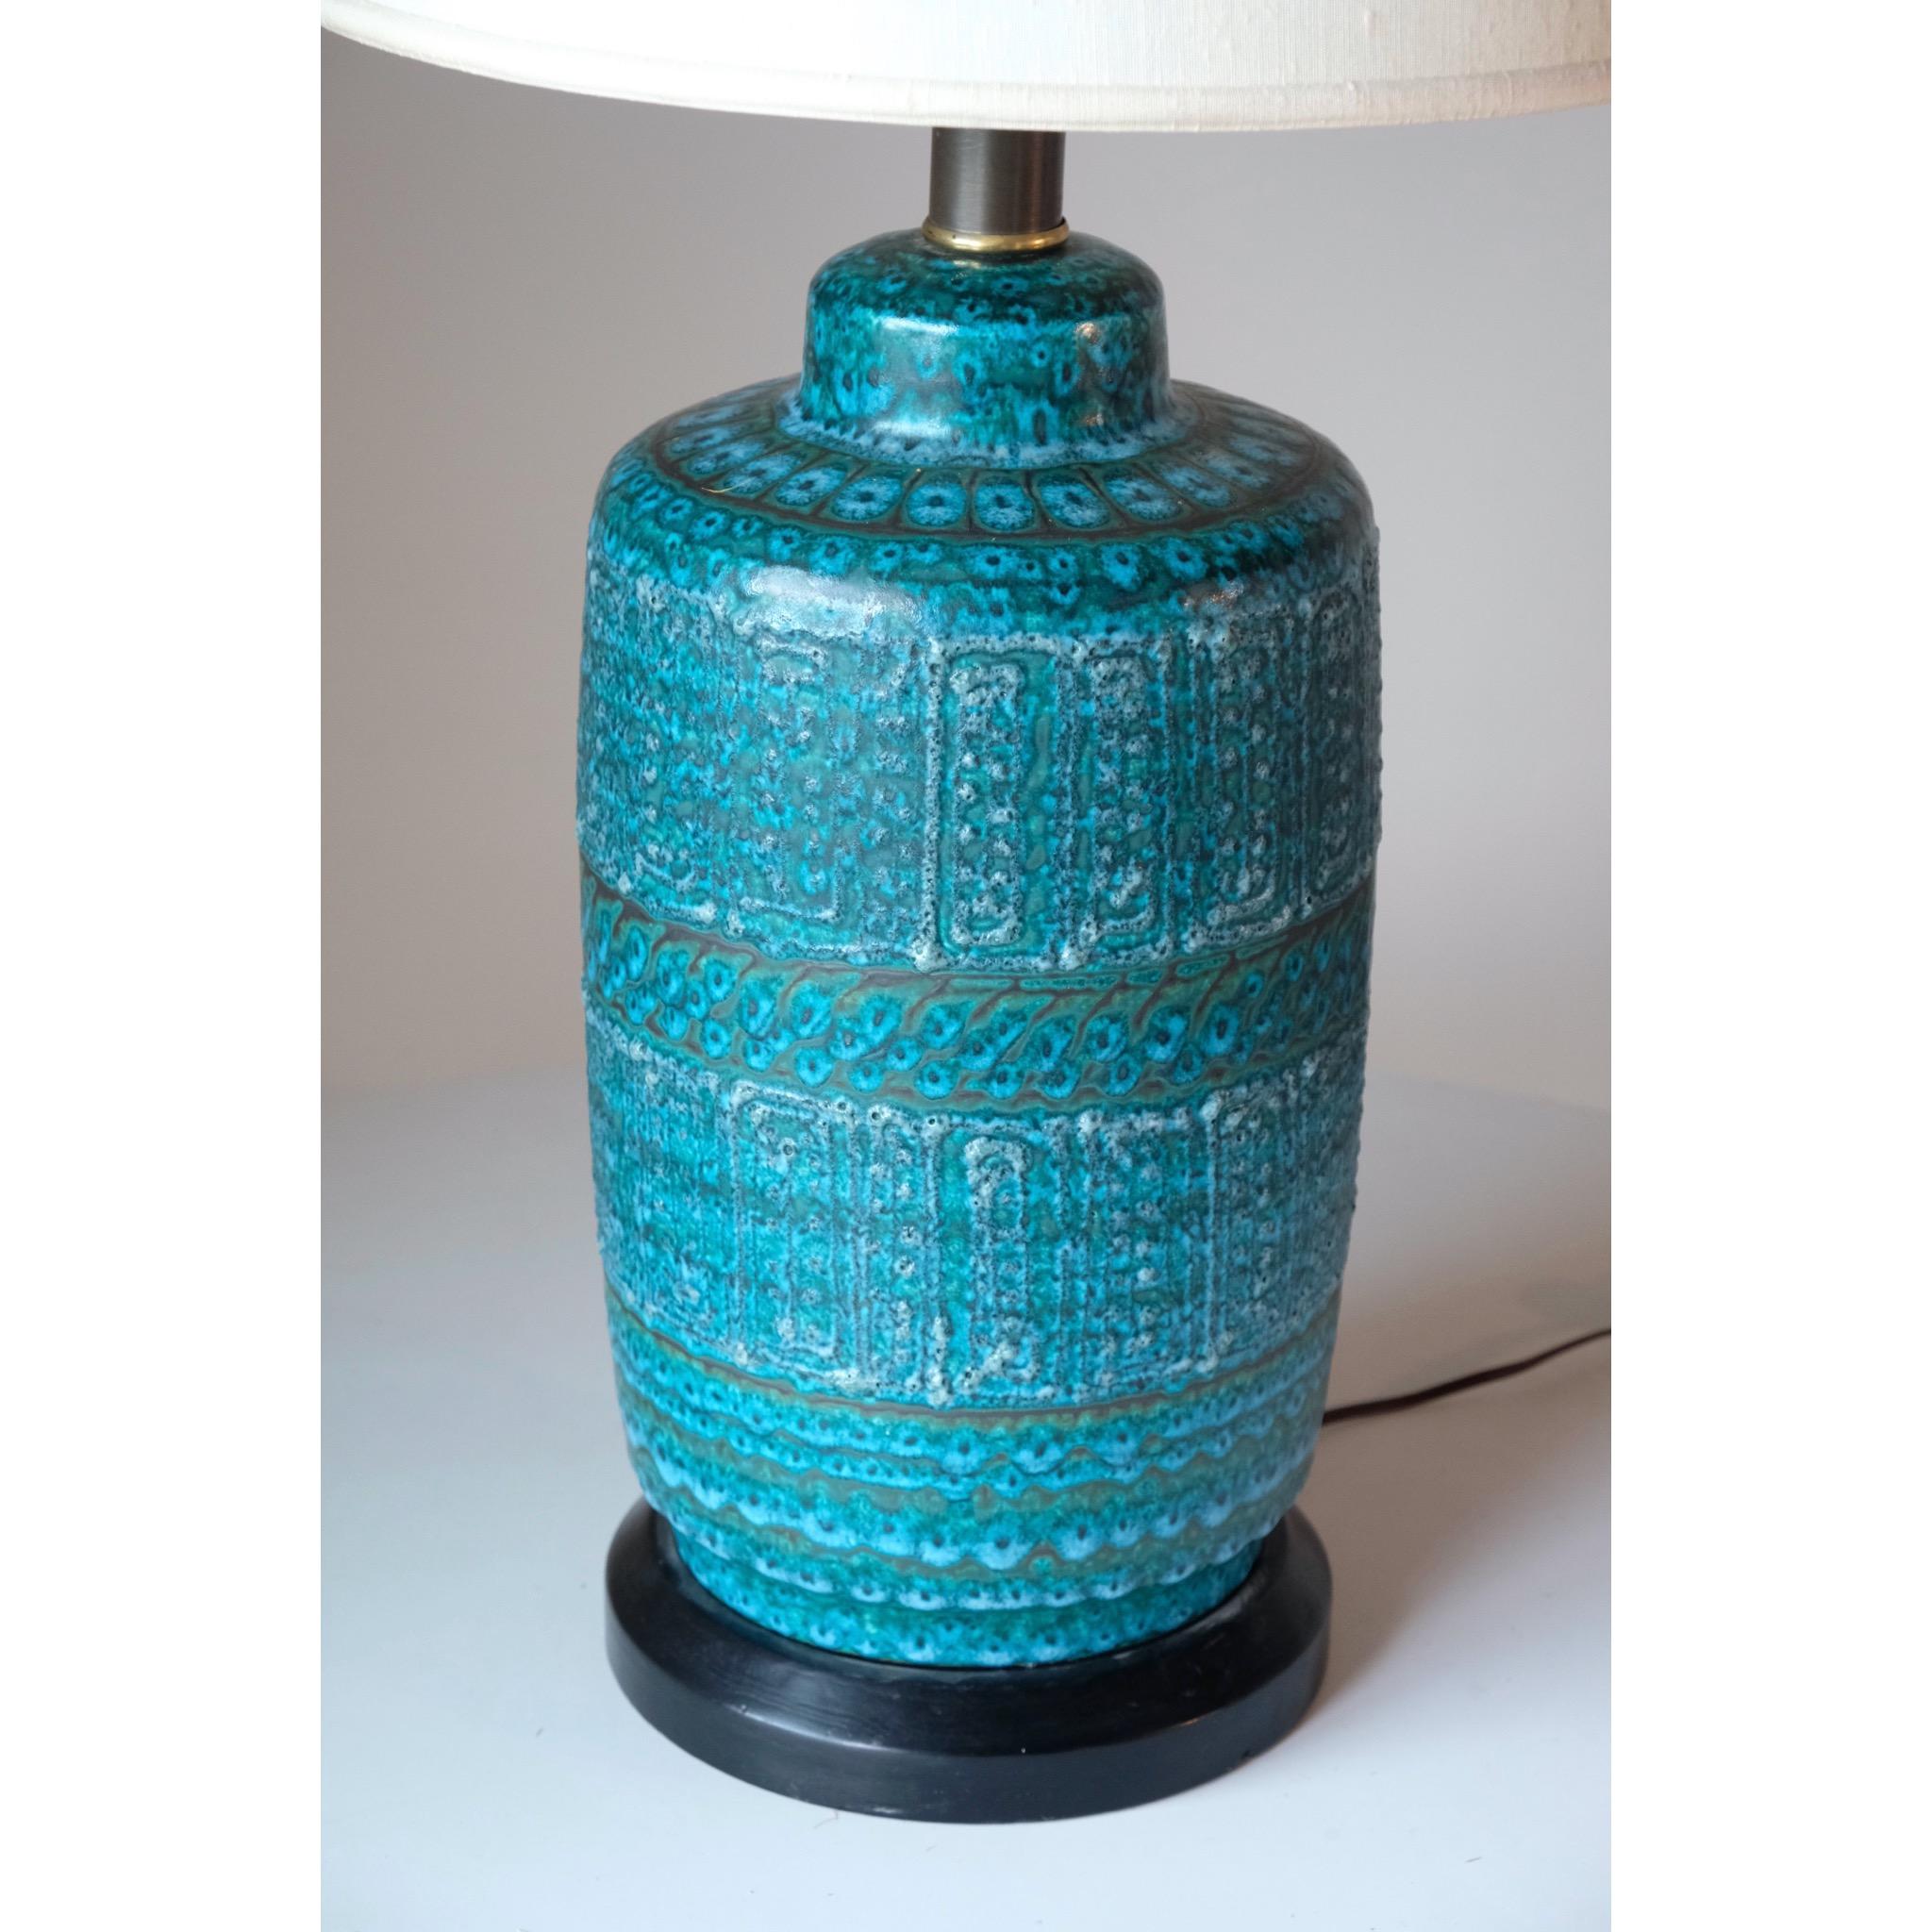 Lampe de table moderniste conçue par le céramiste hawaïen George Nobuyuki, produite par Sy Allan Designs en Californie. Magnifique motif de glaçure bleu/vert, rappelant les motifs de Bitossi. L'abat-jour n'est pas inclus, sauf en cas d'enlèvement